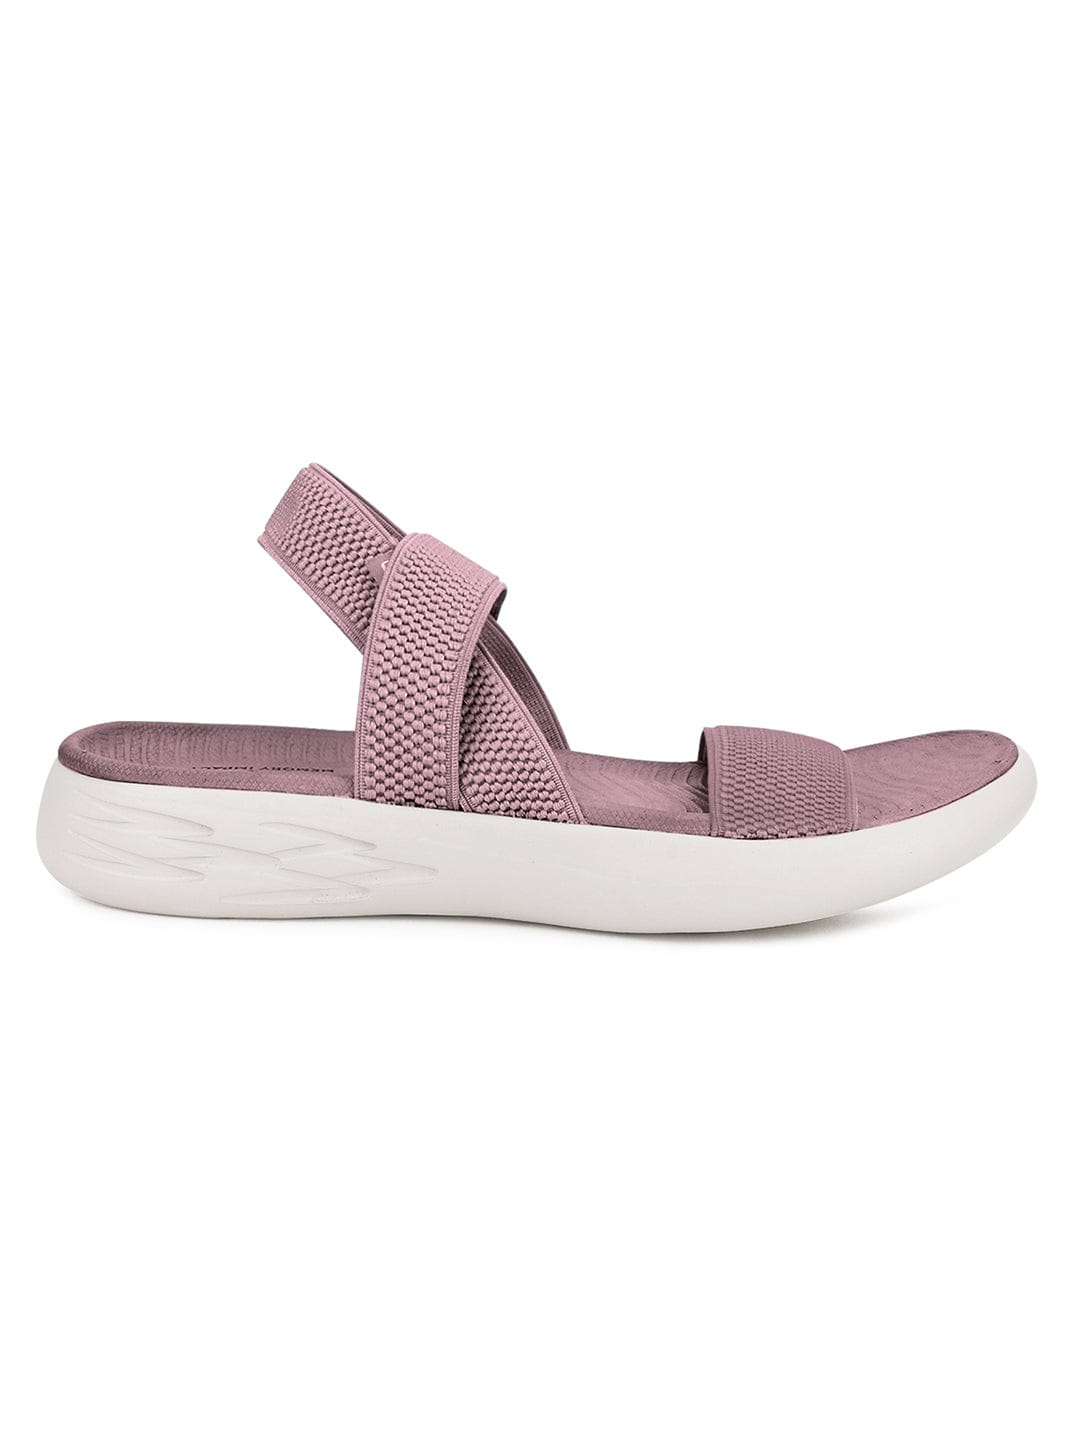 Buy Purple Metallic Tie Up Block Heel Sandals for Women Online in India